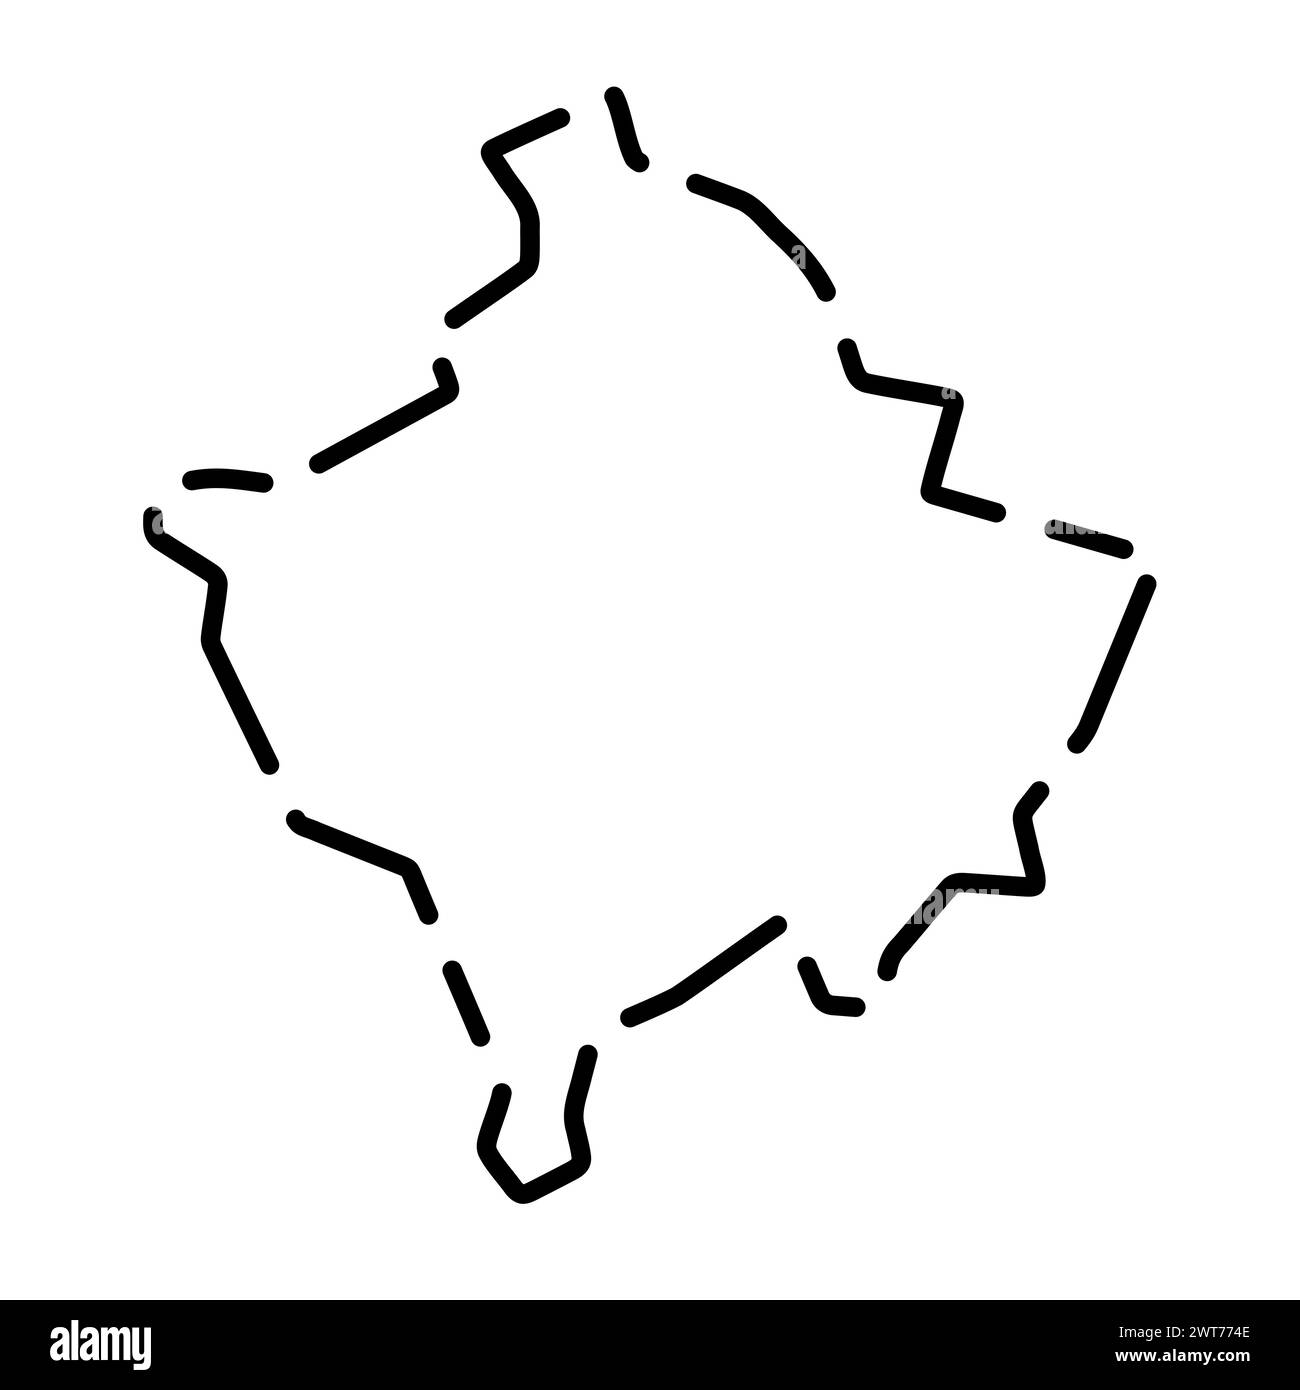 Mappa semplificata del paese del Kosovo. Contorno nero interrotto su sfondo bianco. Semplice icona vettoriale Illustrazione Vettoriale